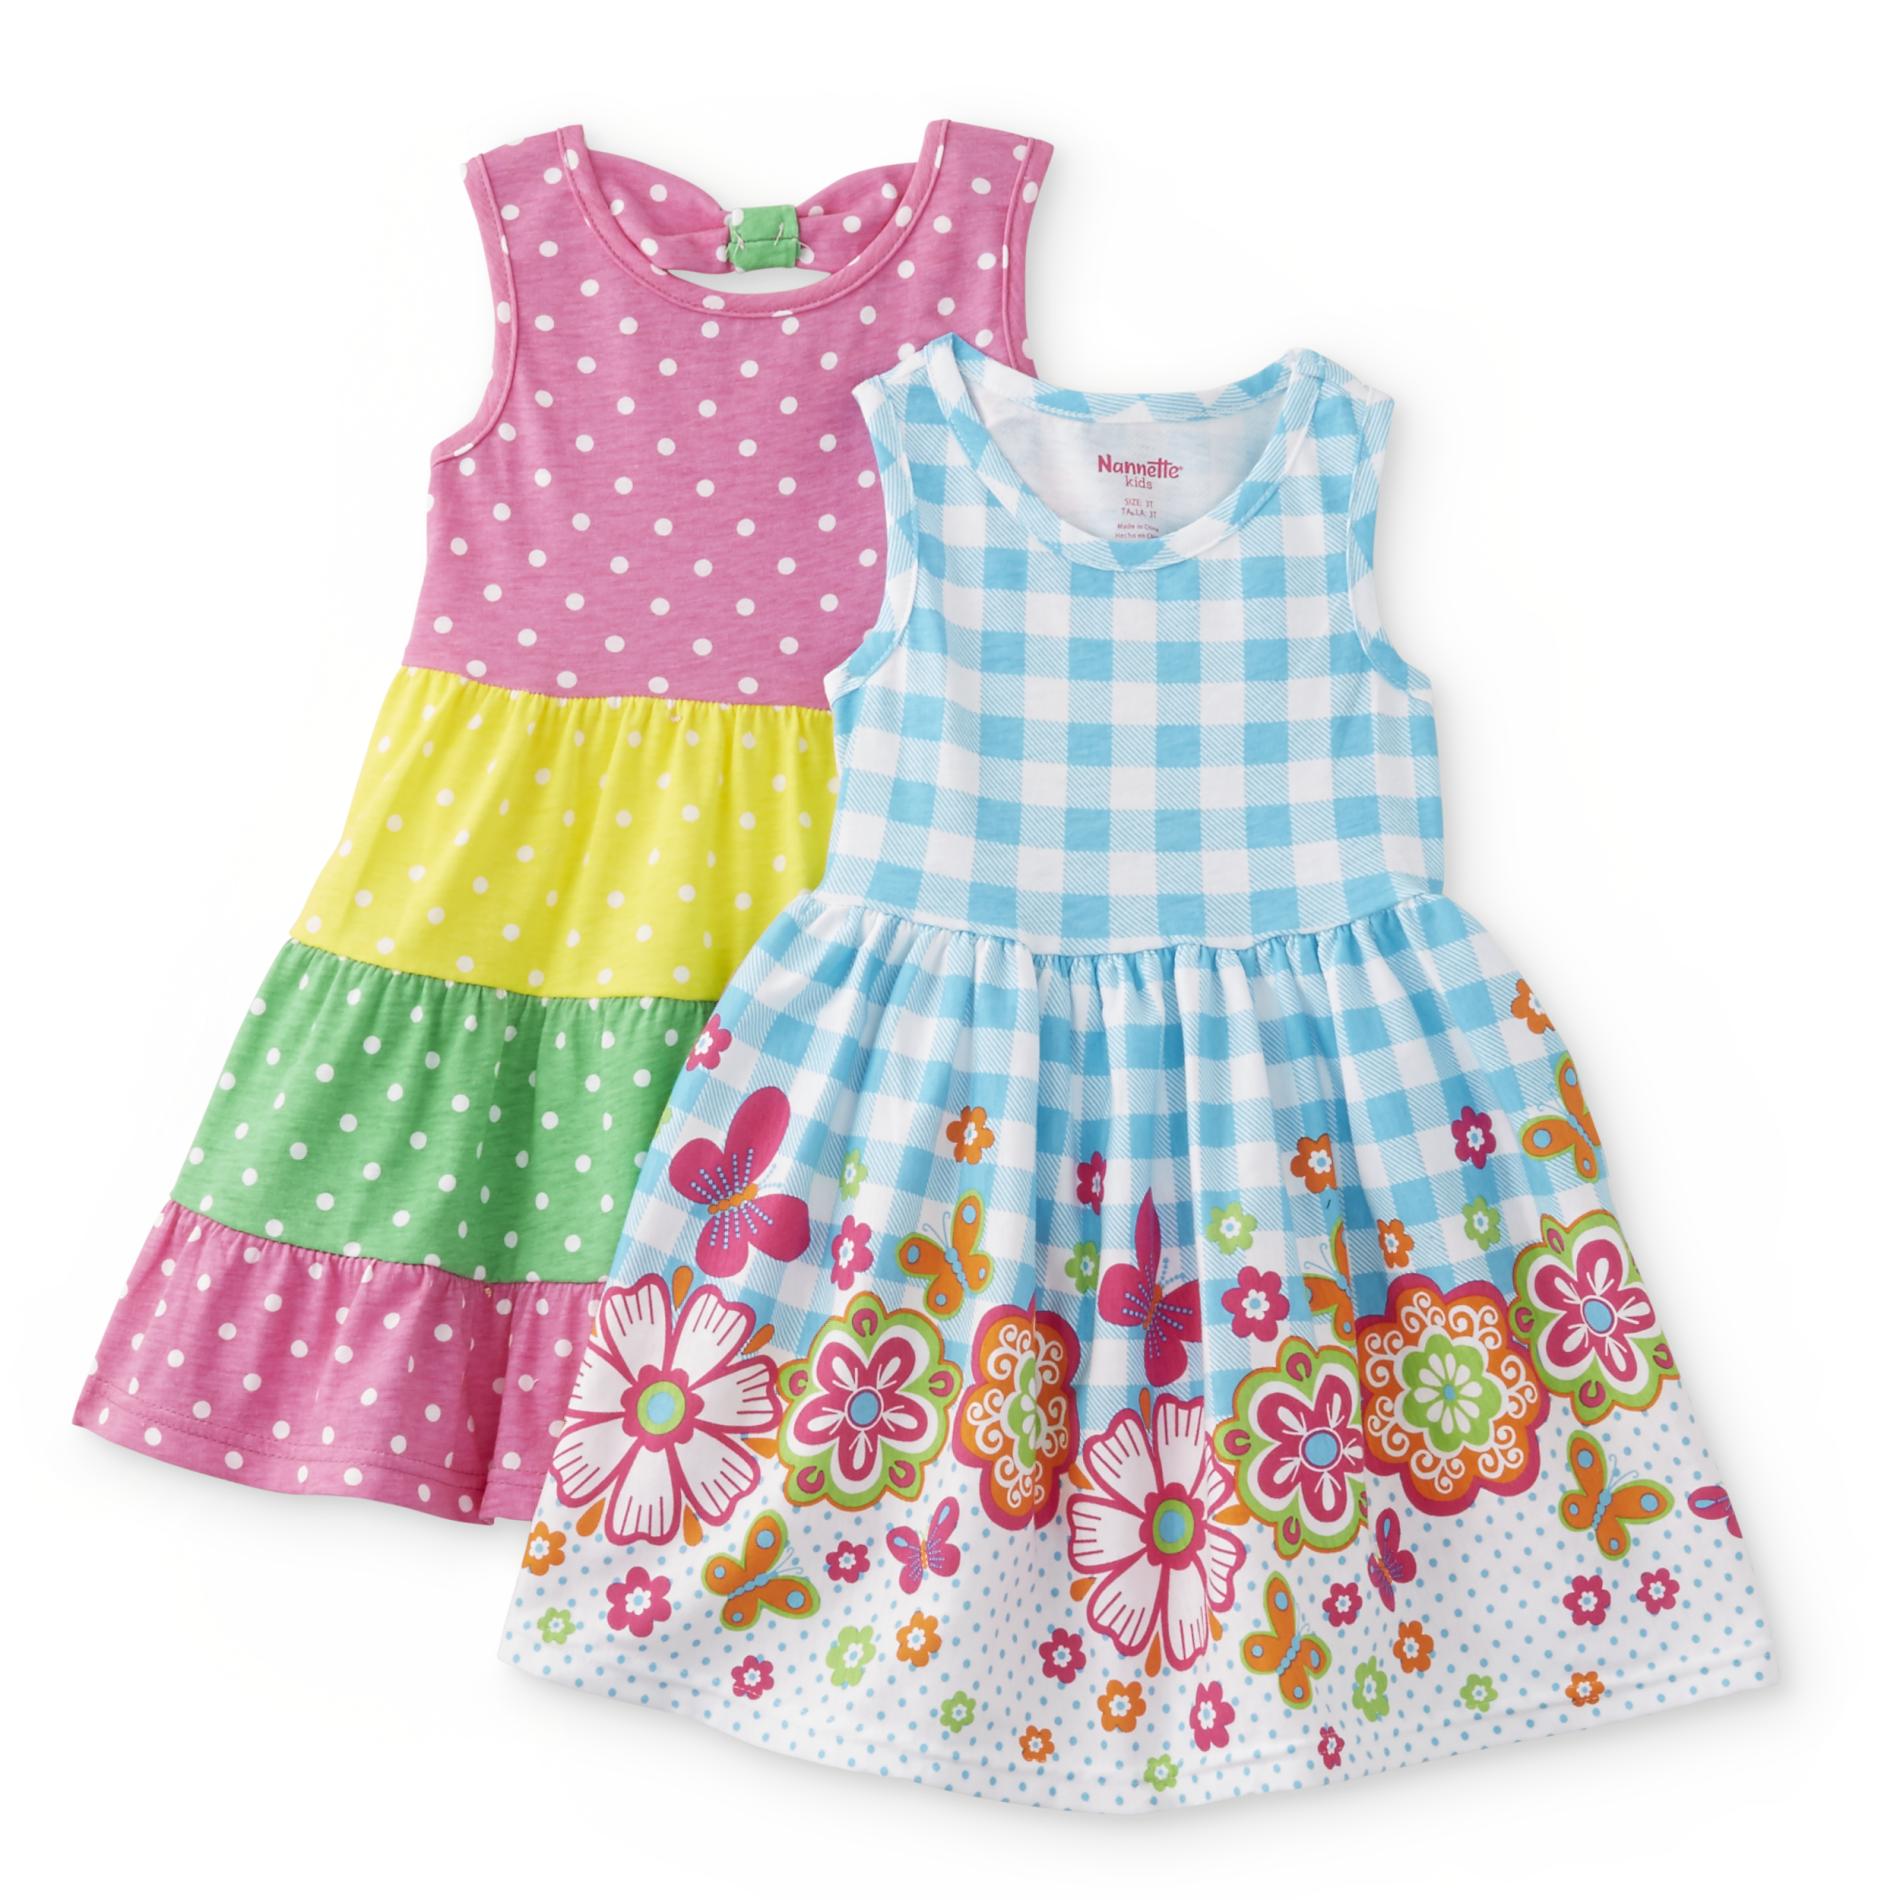 Toddler Girls' 2-Pack Sundresses - Polka Dot & Floral